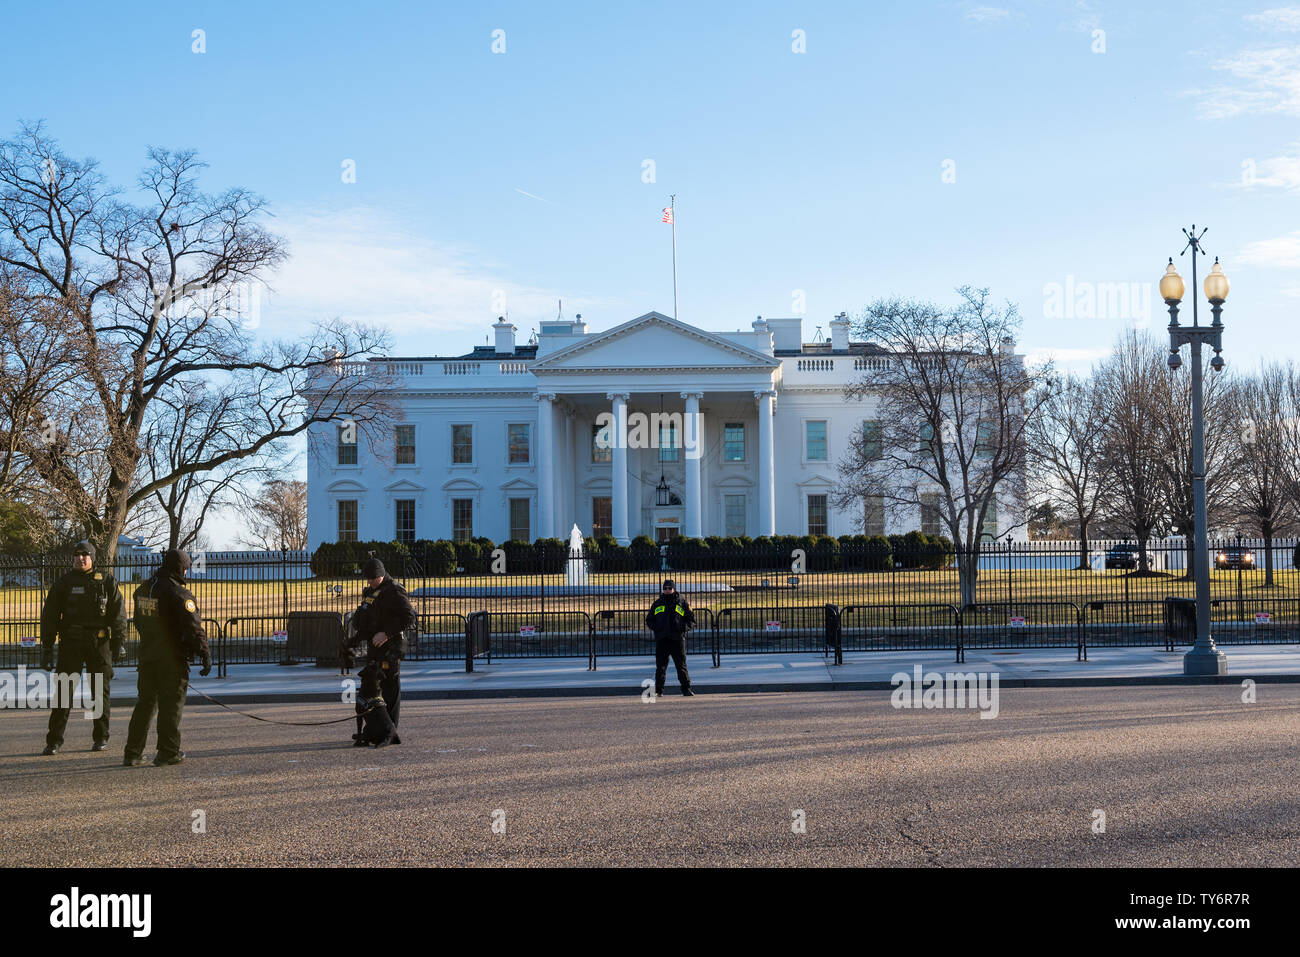 Washington, DC / USA - Vers février 2018 : un groupe d'agents des services secrets vu à la limite extérieure de la Maison Blanche pendant une journée d'hiver Banque D'Images